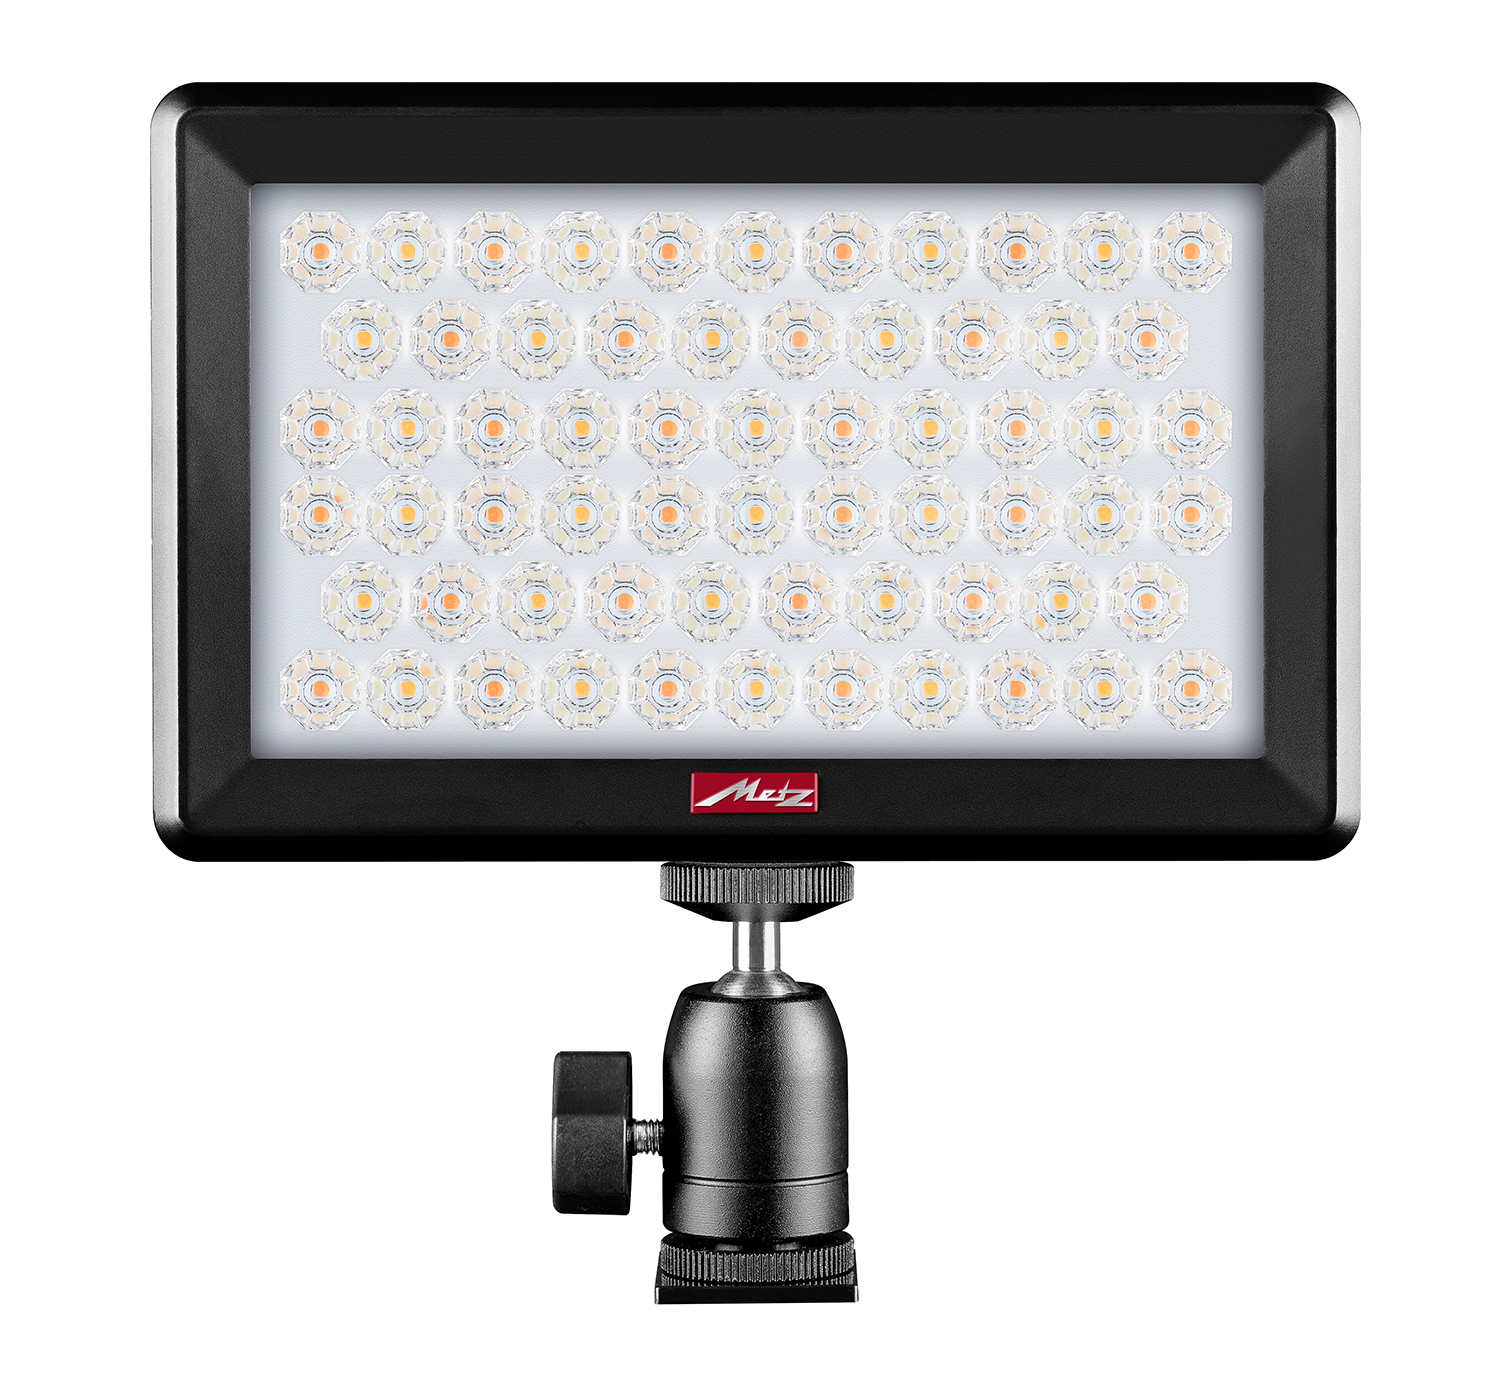 LED-Aufnahmelicht für Videos und Fotos